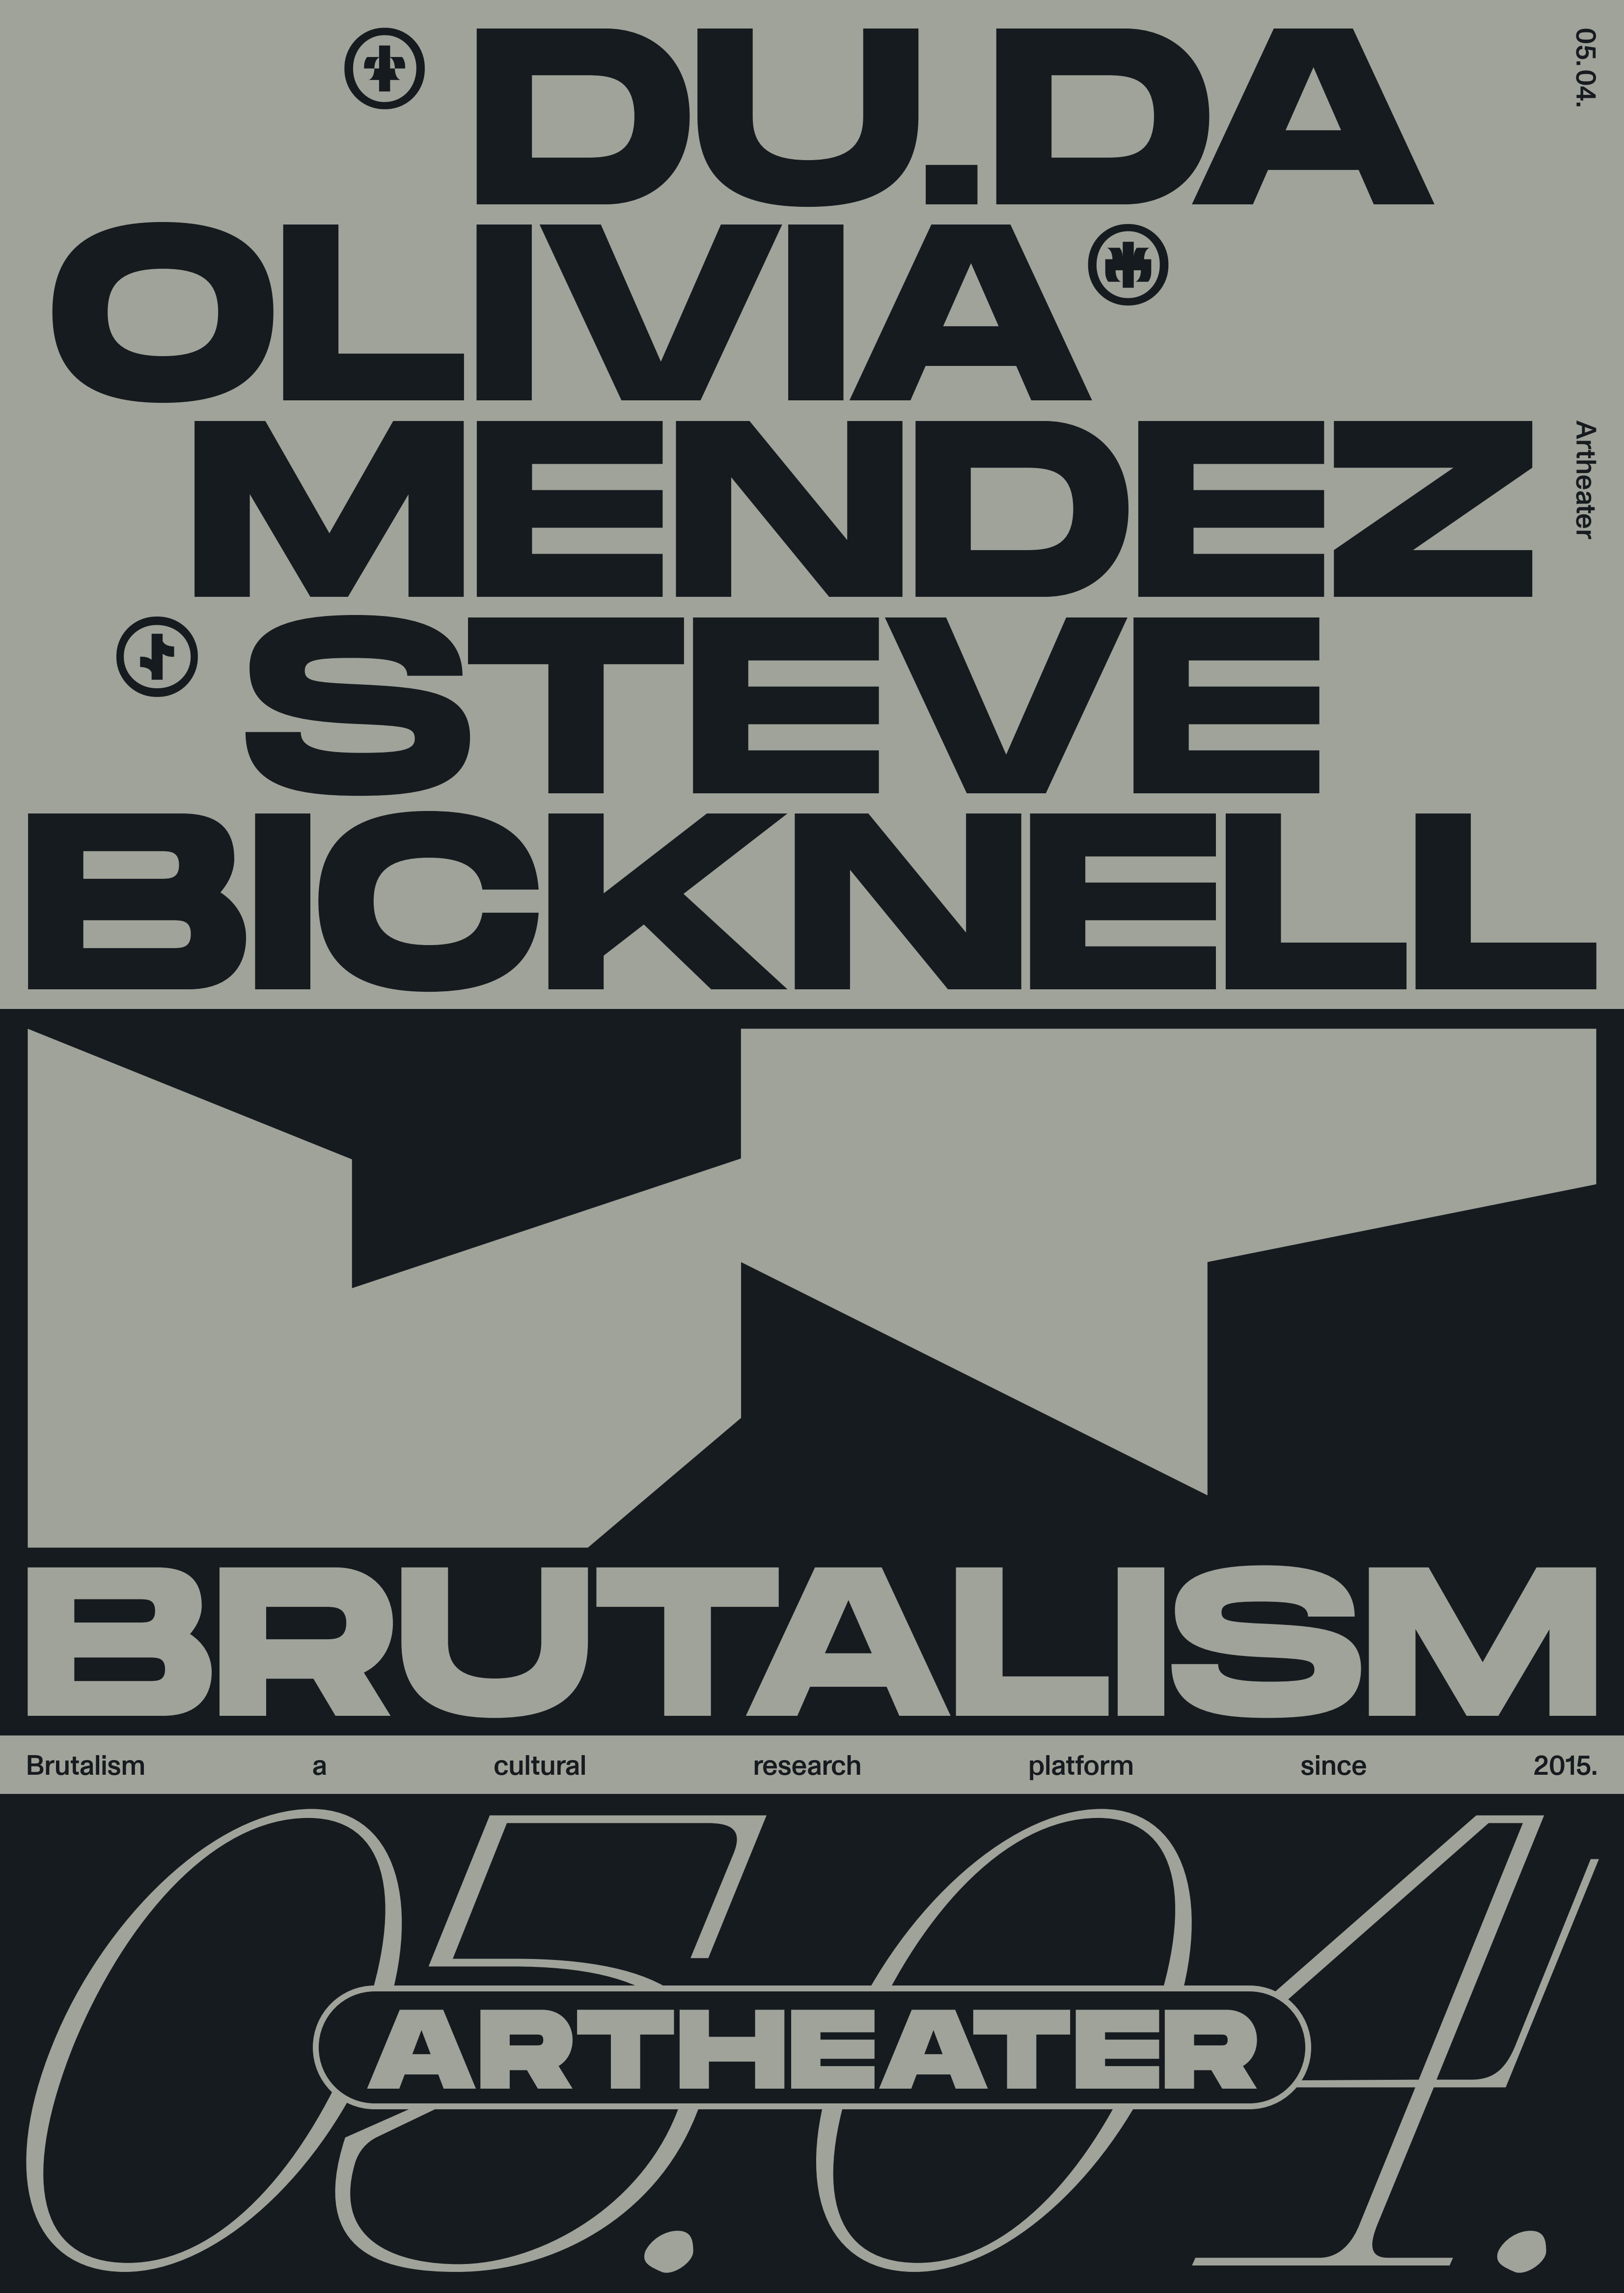 Brutalism with Olivia Mendez & Steve Bicknell - Página frontal